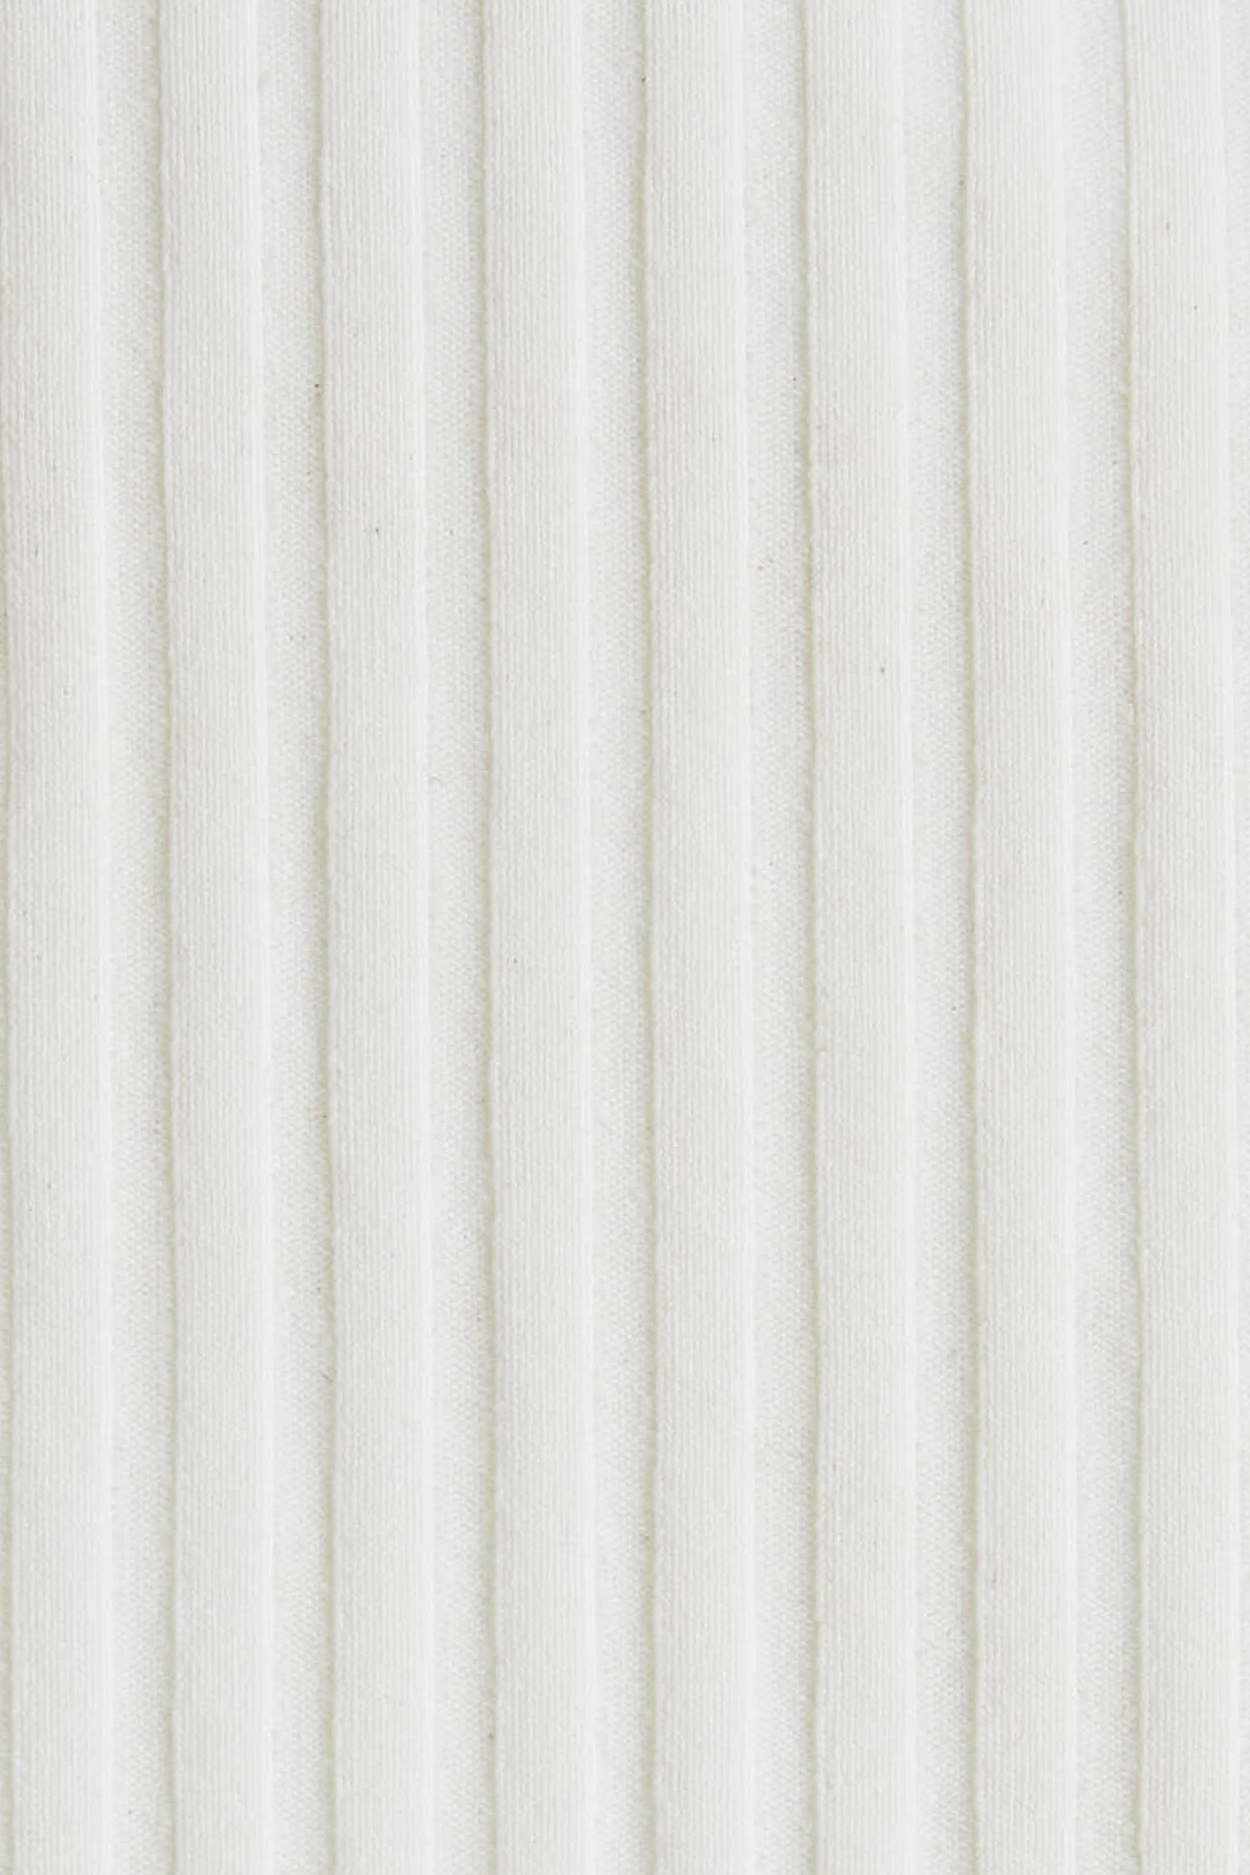 White EcoRib Fabric Detail Swatch